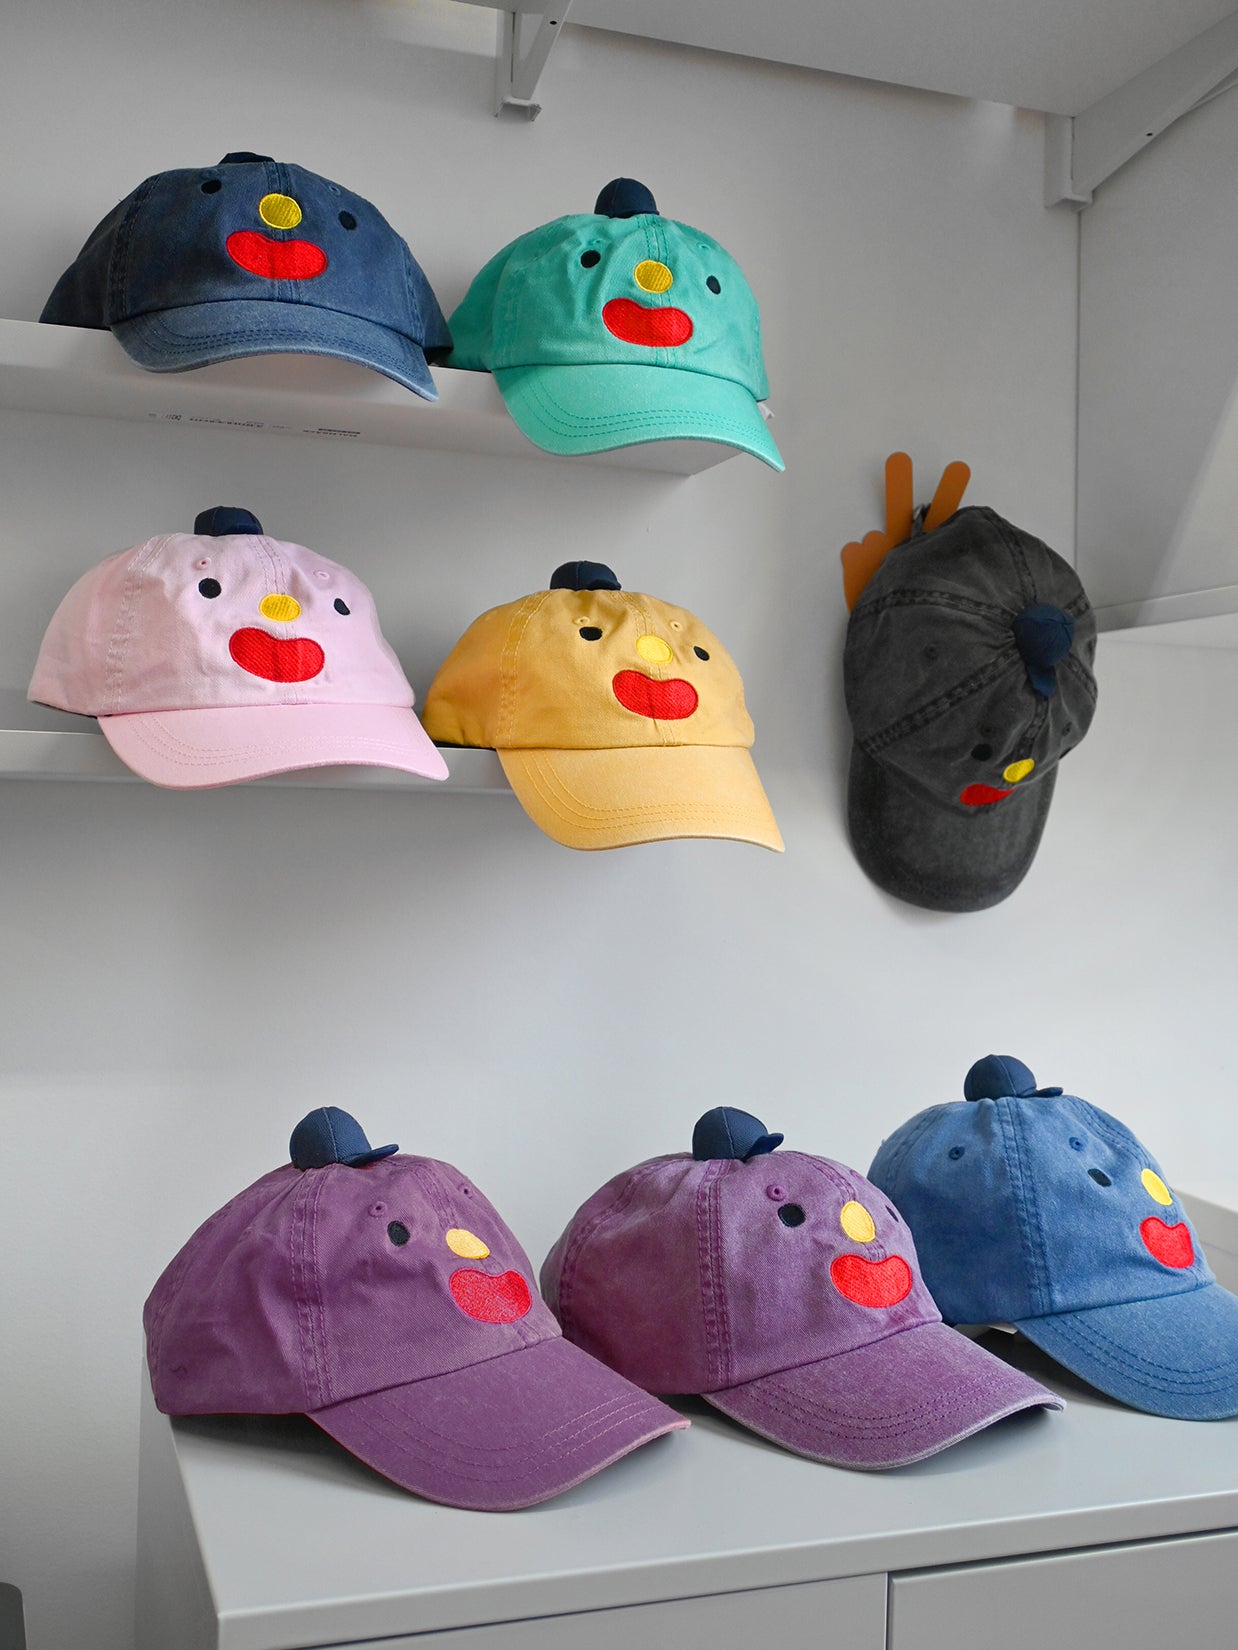 The original "Hat on Hat", designed by Natali Koromoto.